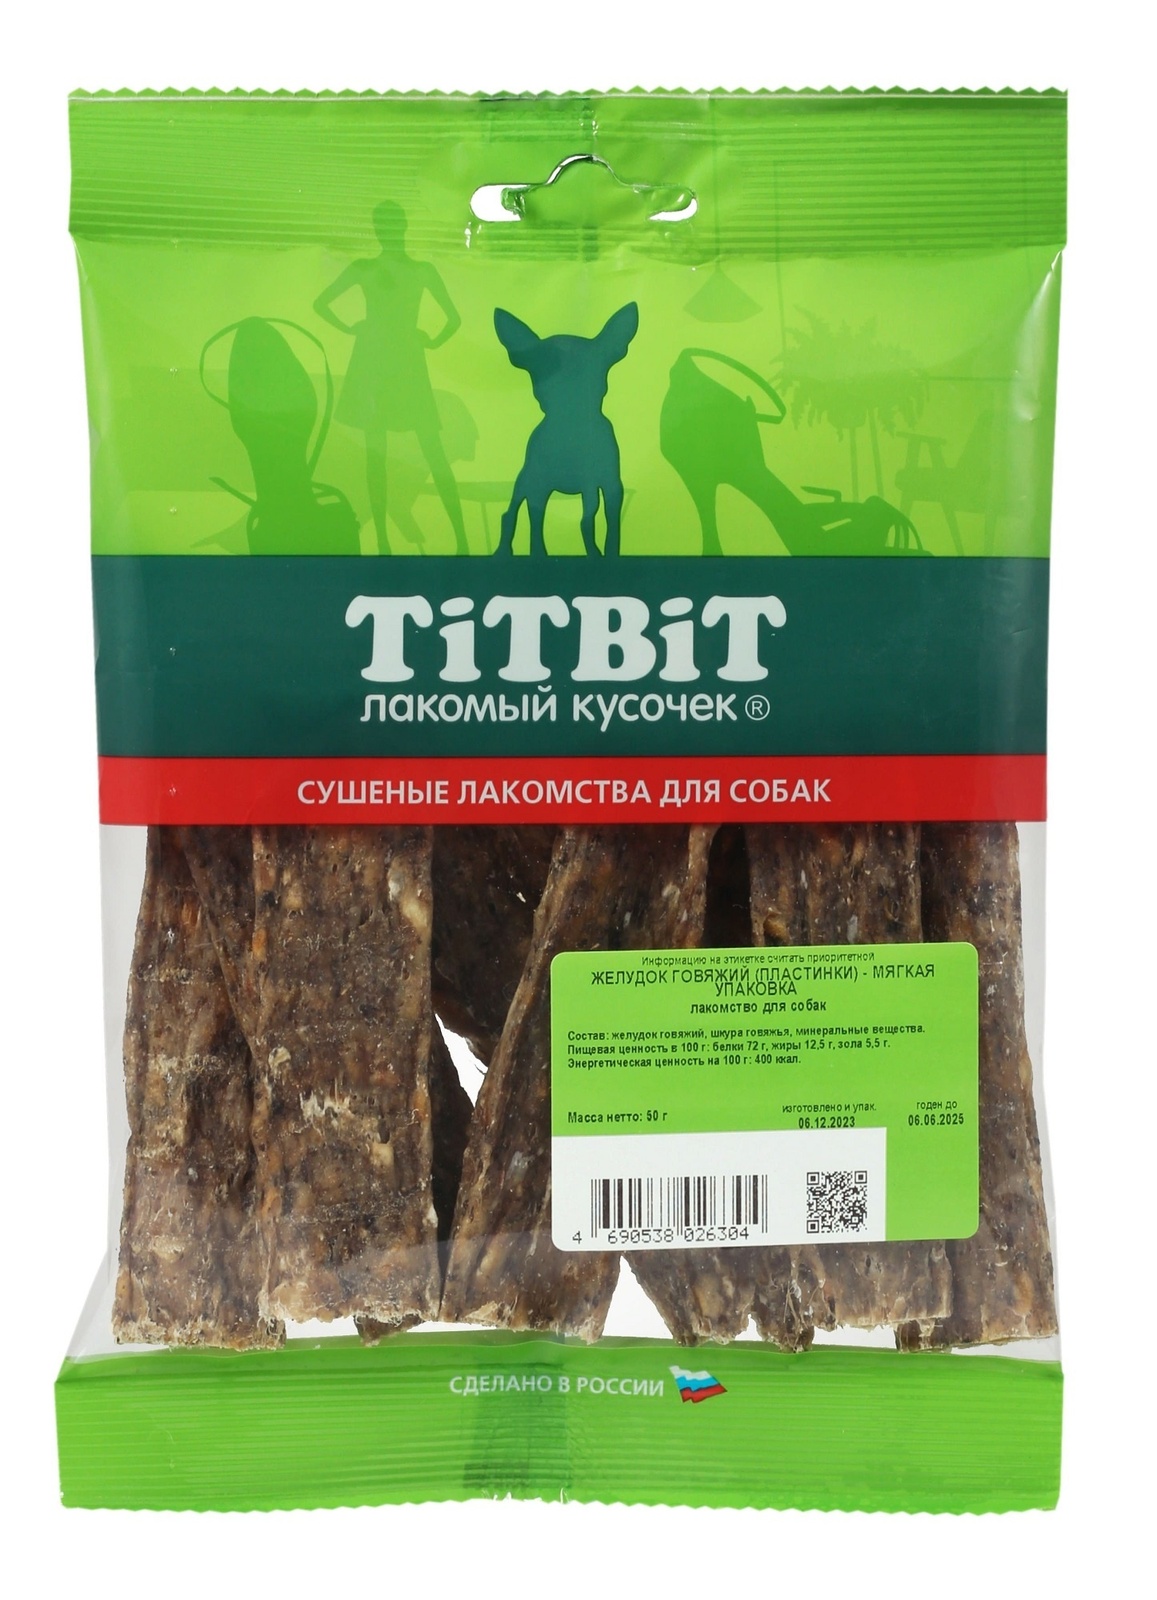 TiTBiT TiTBiT желудок говяжий (пластинки) - мягкая упаковка (50 г) titbit titbit желудок бараний мини мягкая упаковка 40 г